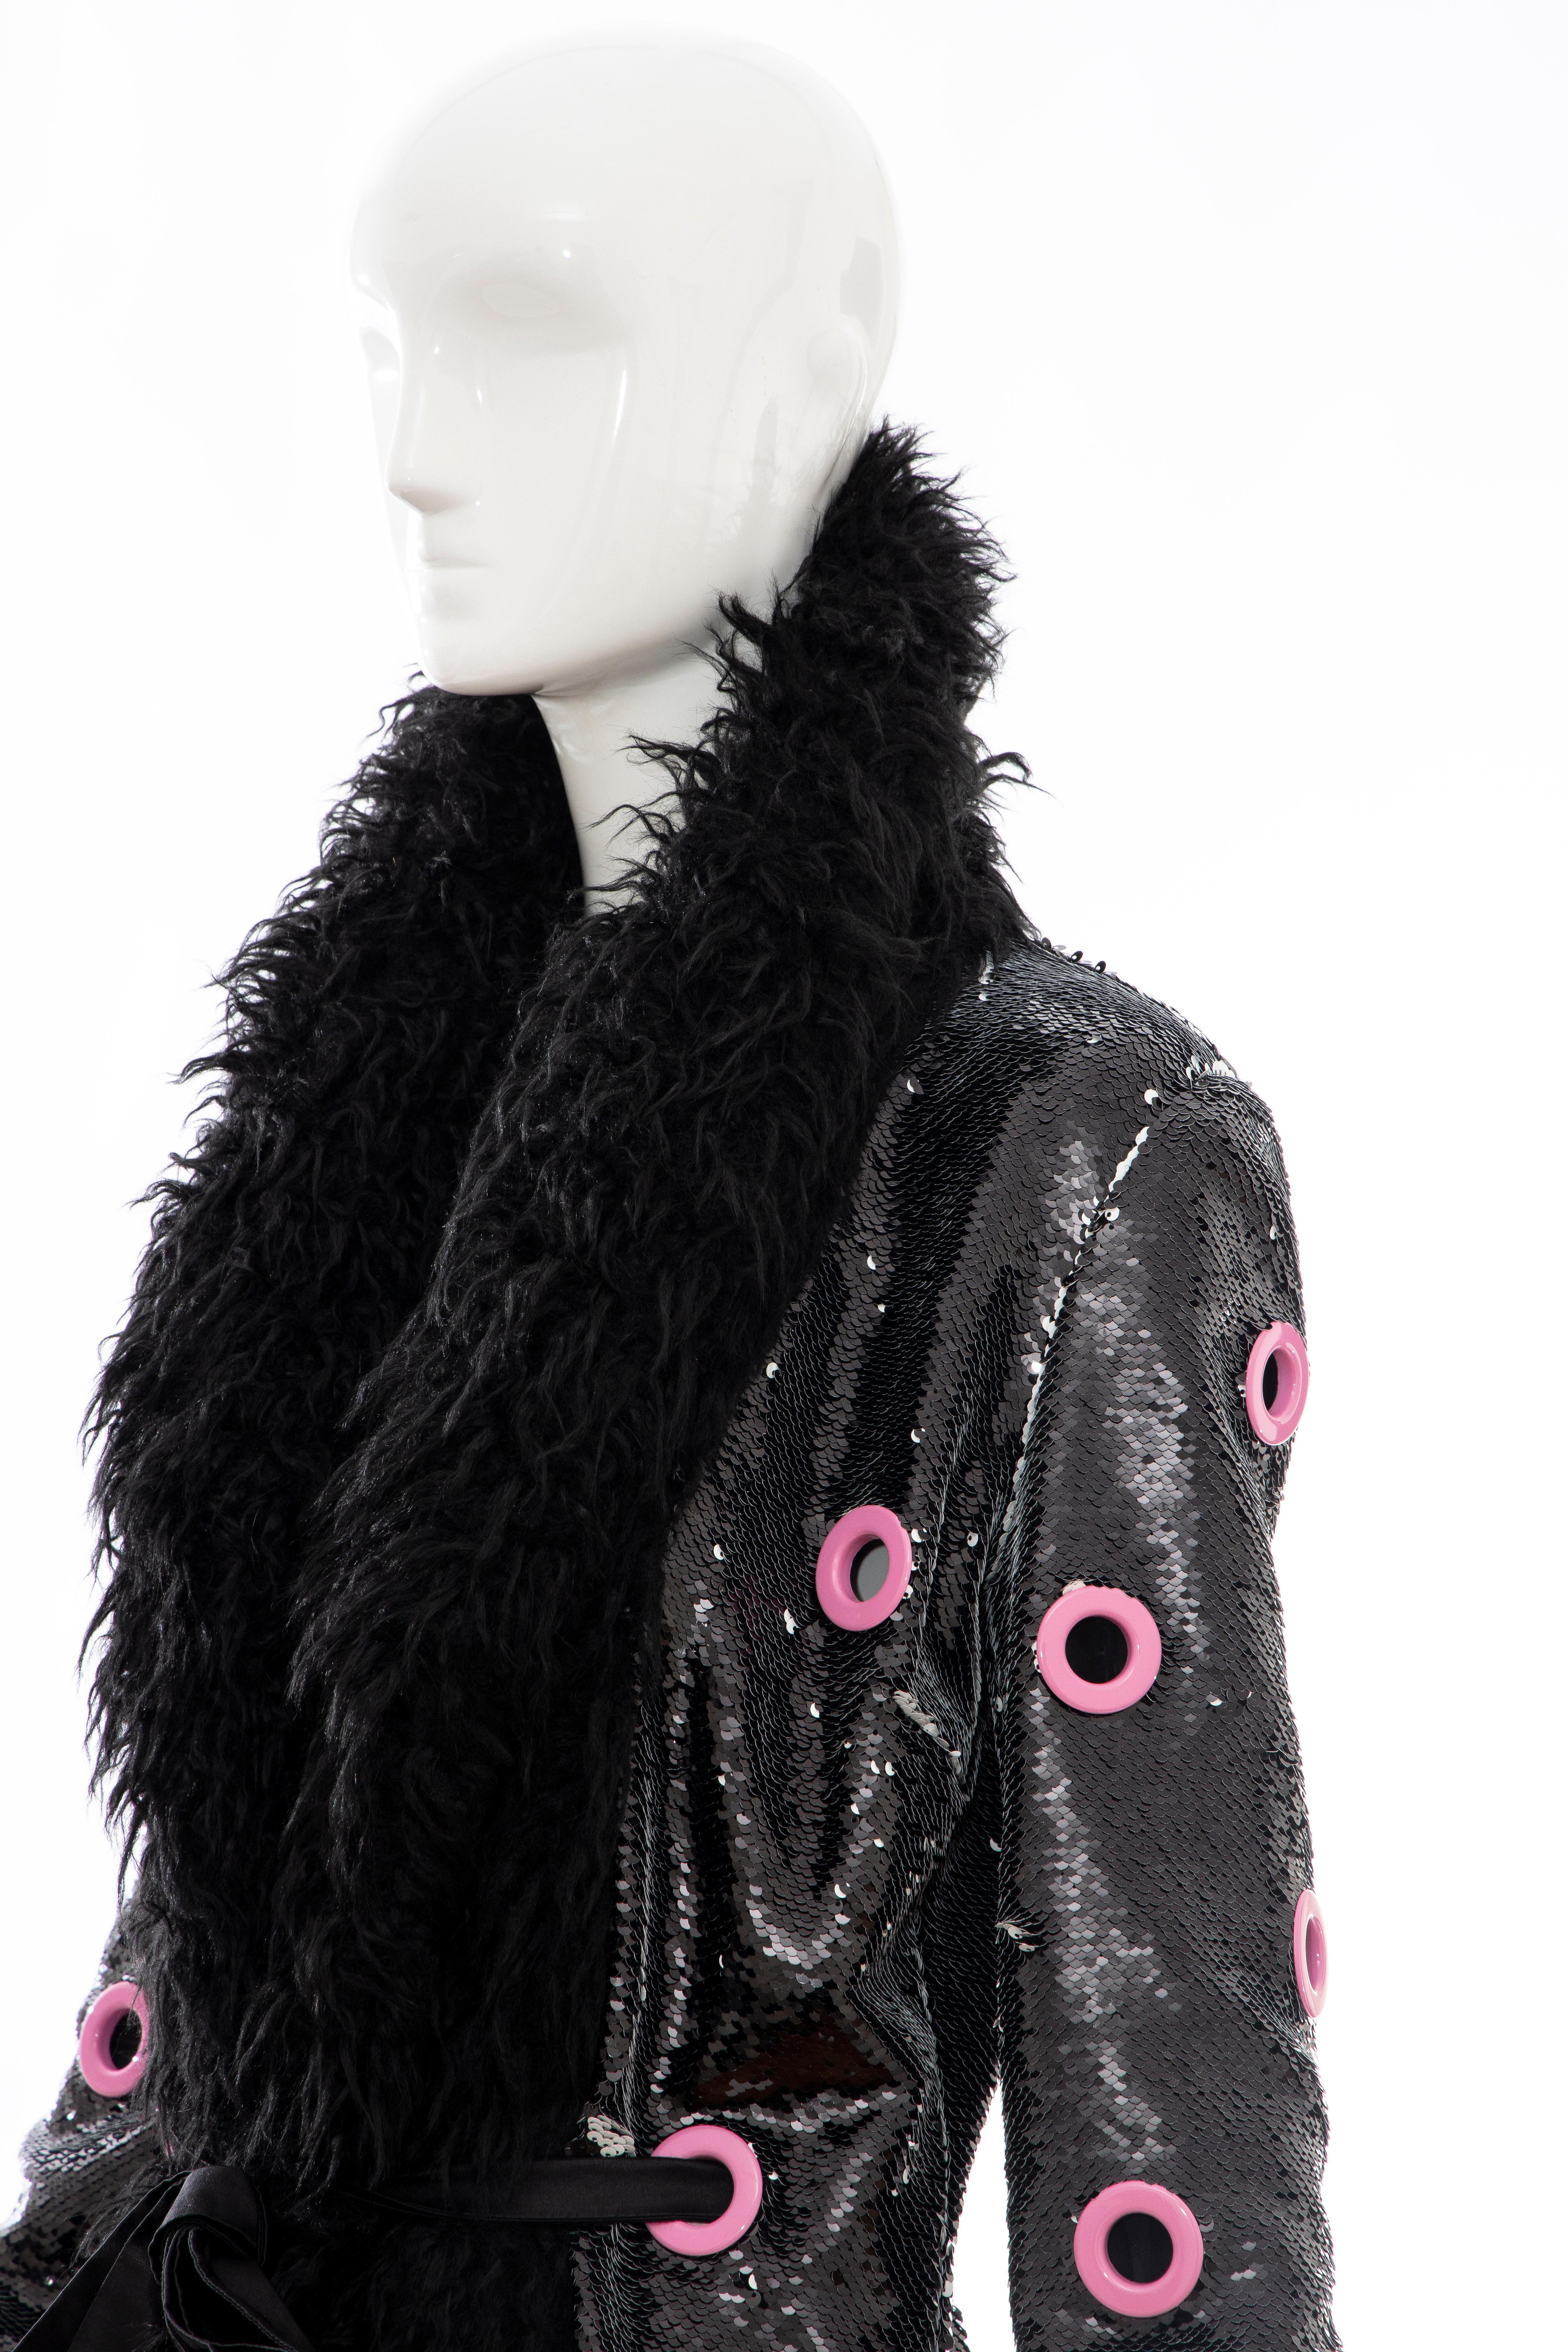 Jeremy Scott Runway Black Sequins Faux Fur Pink Enamel Grommets Coat, Fall 2016 8